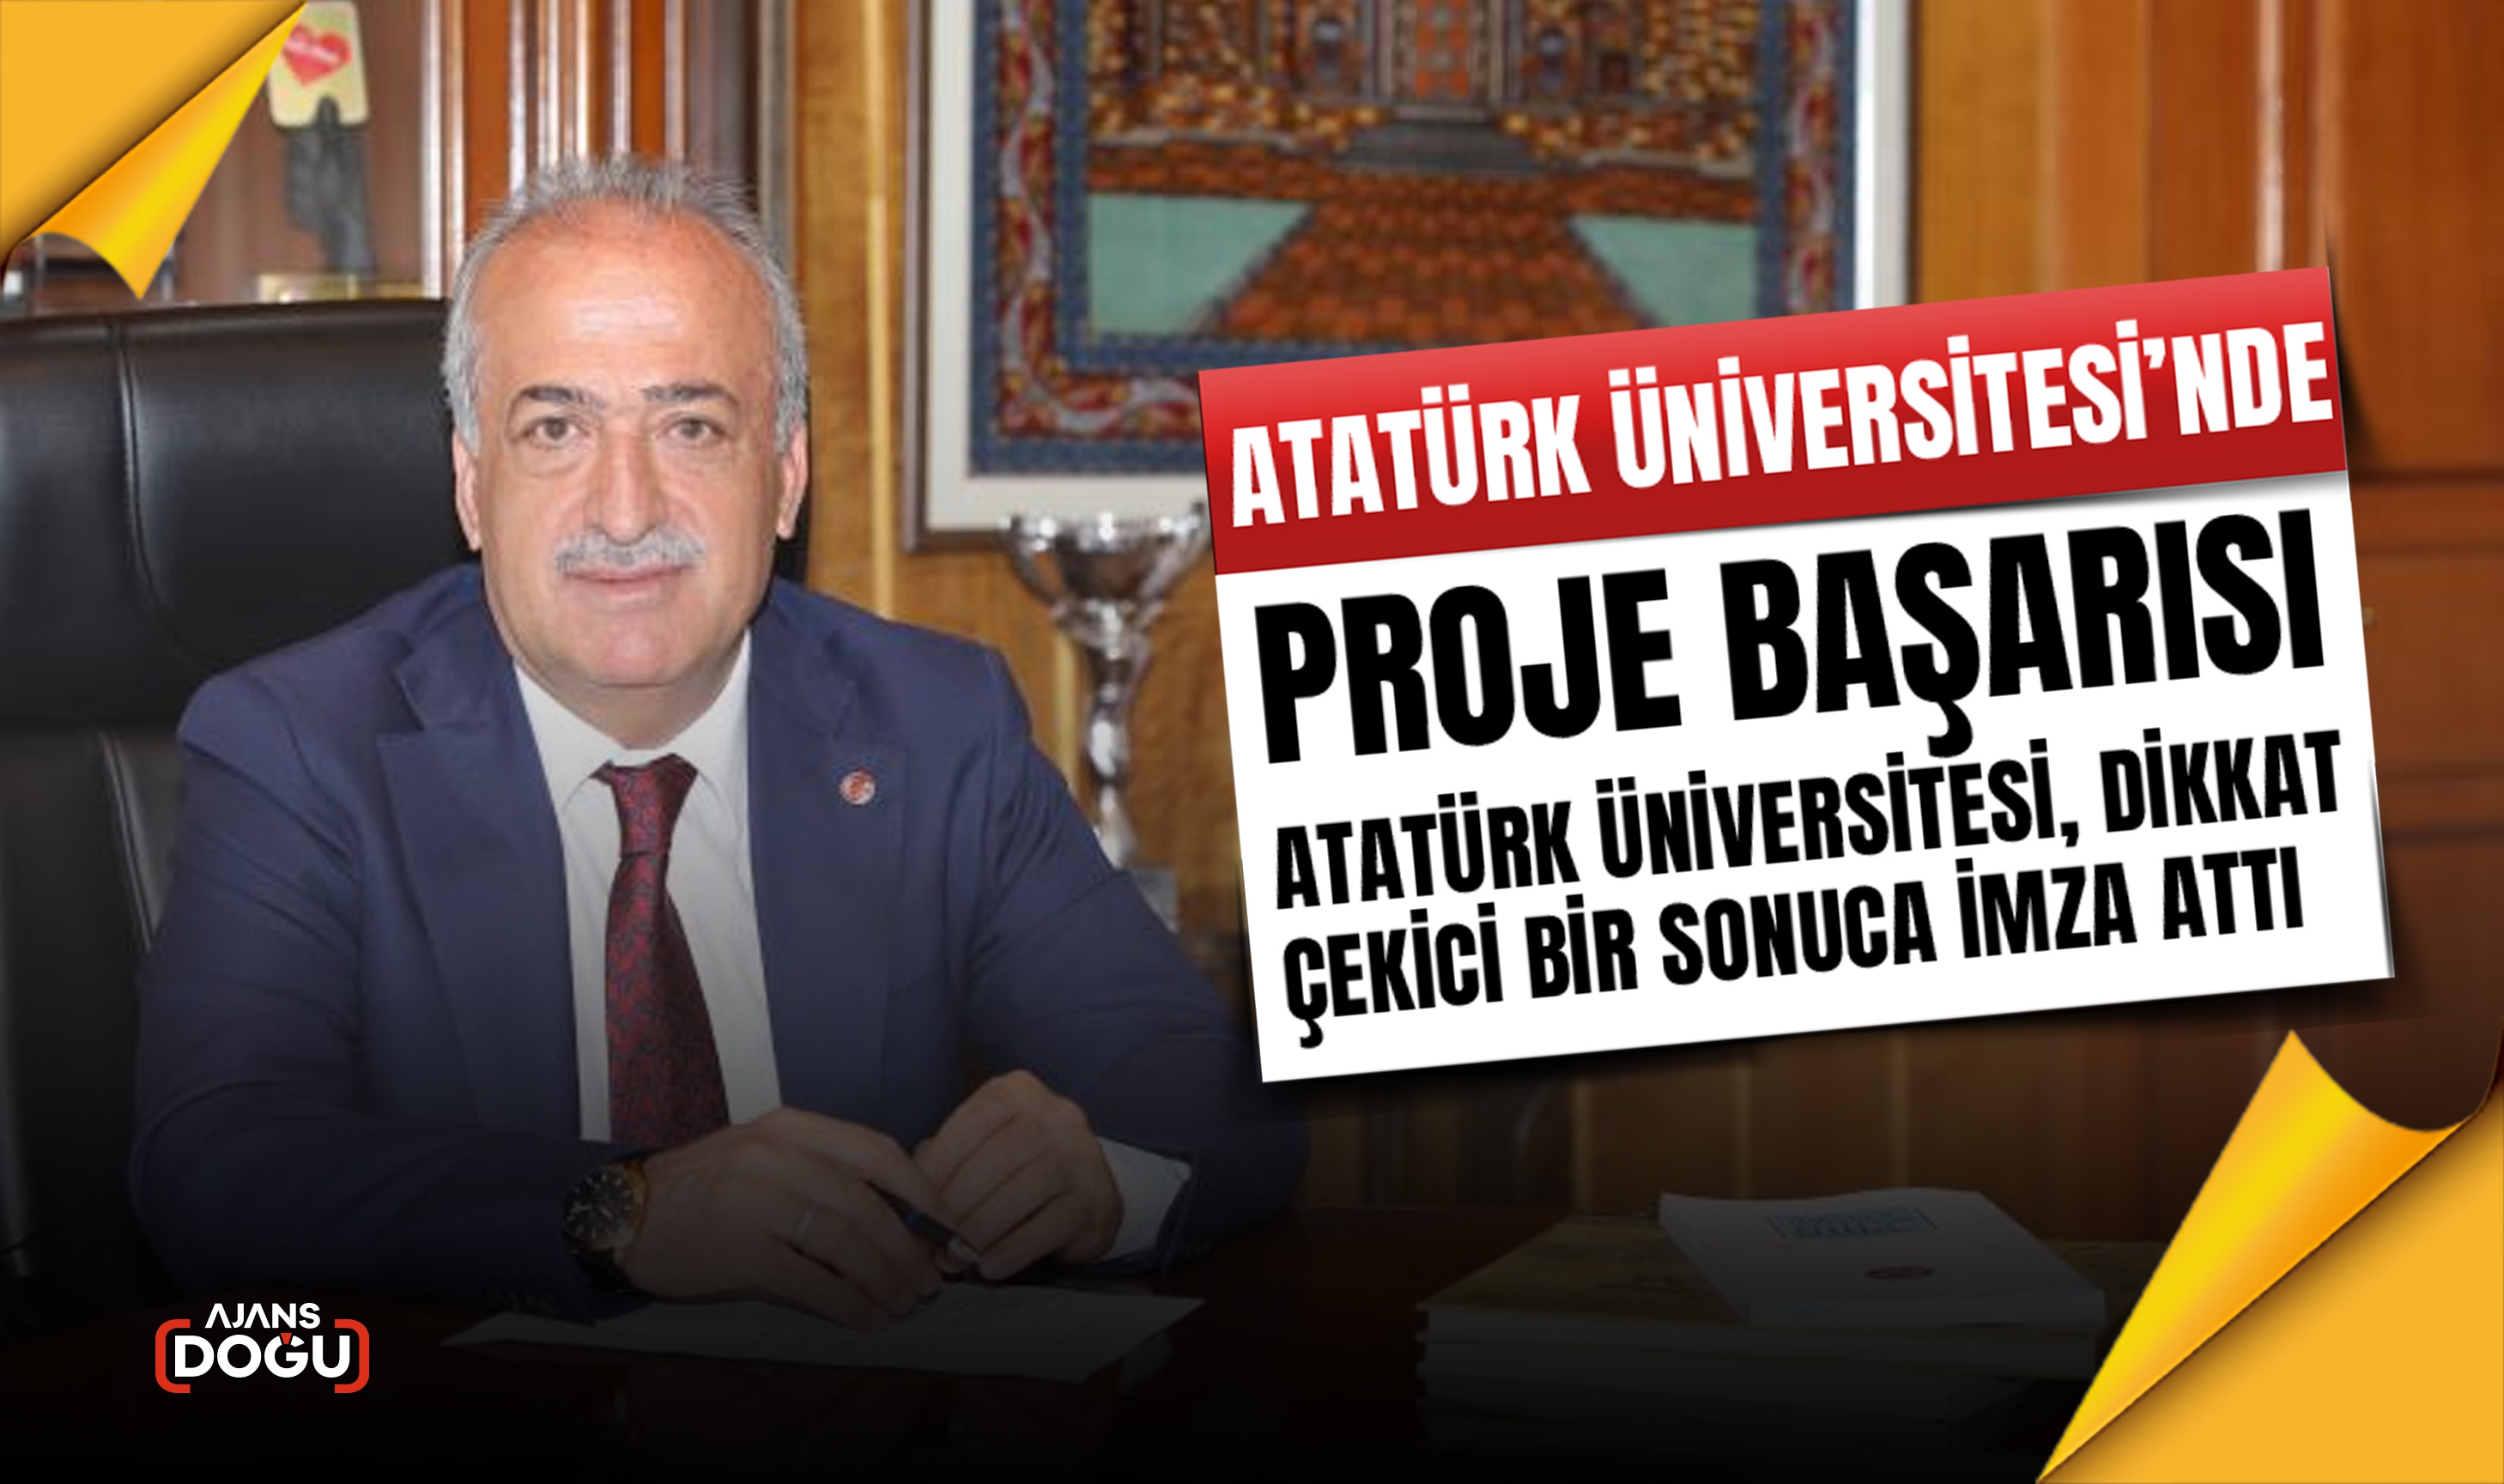 Atatürk Üniversitesi’nde proje başarısı